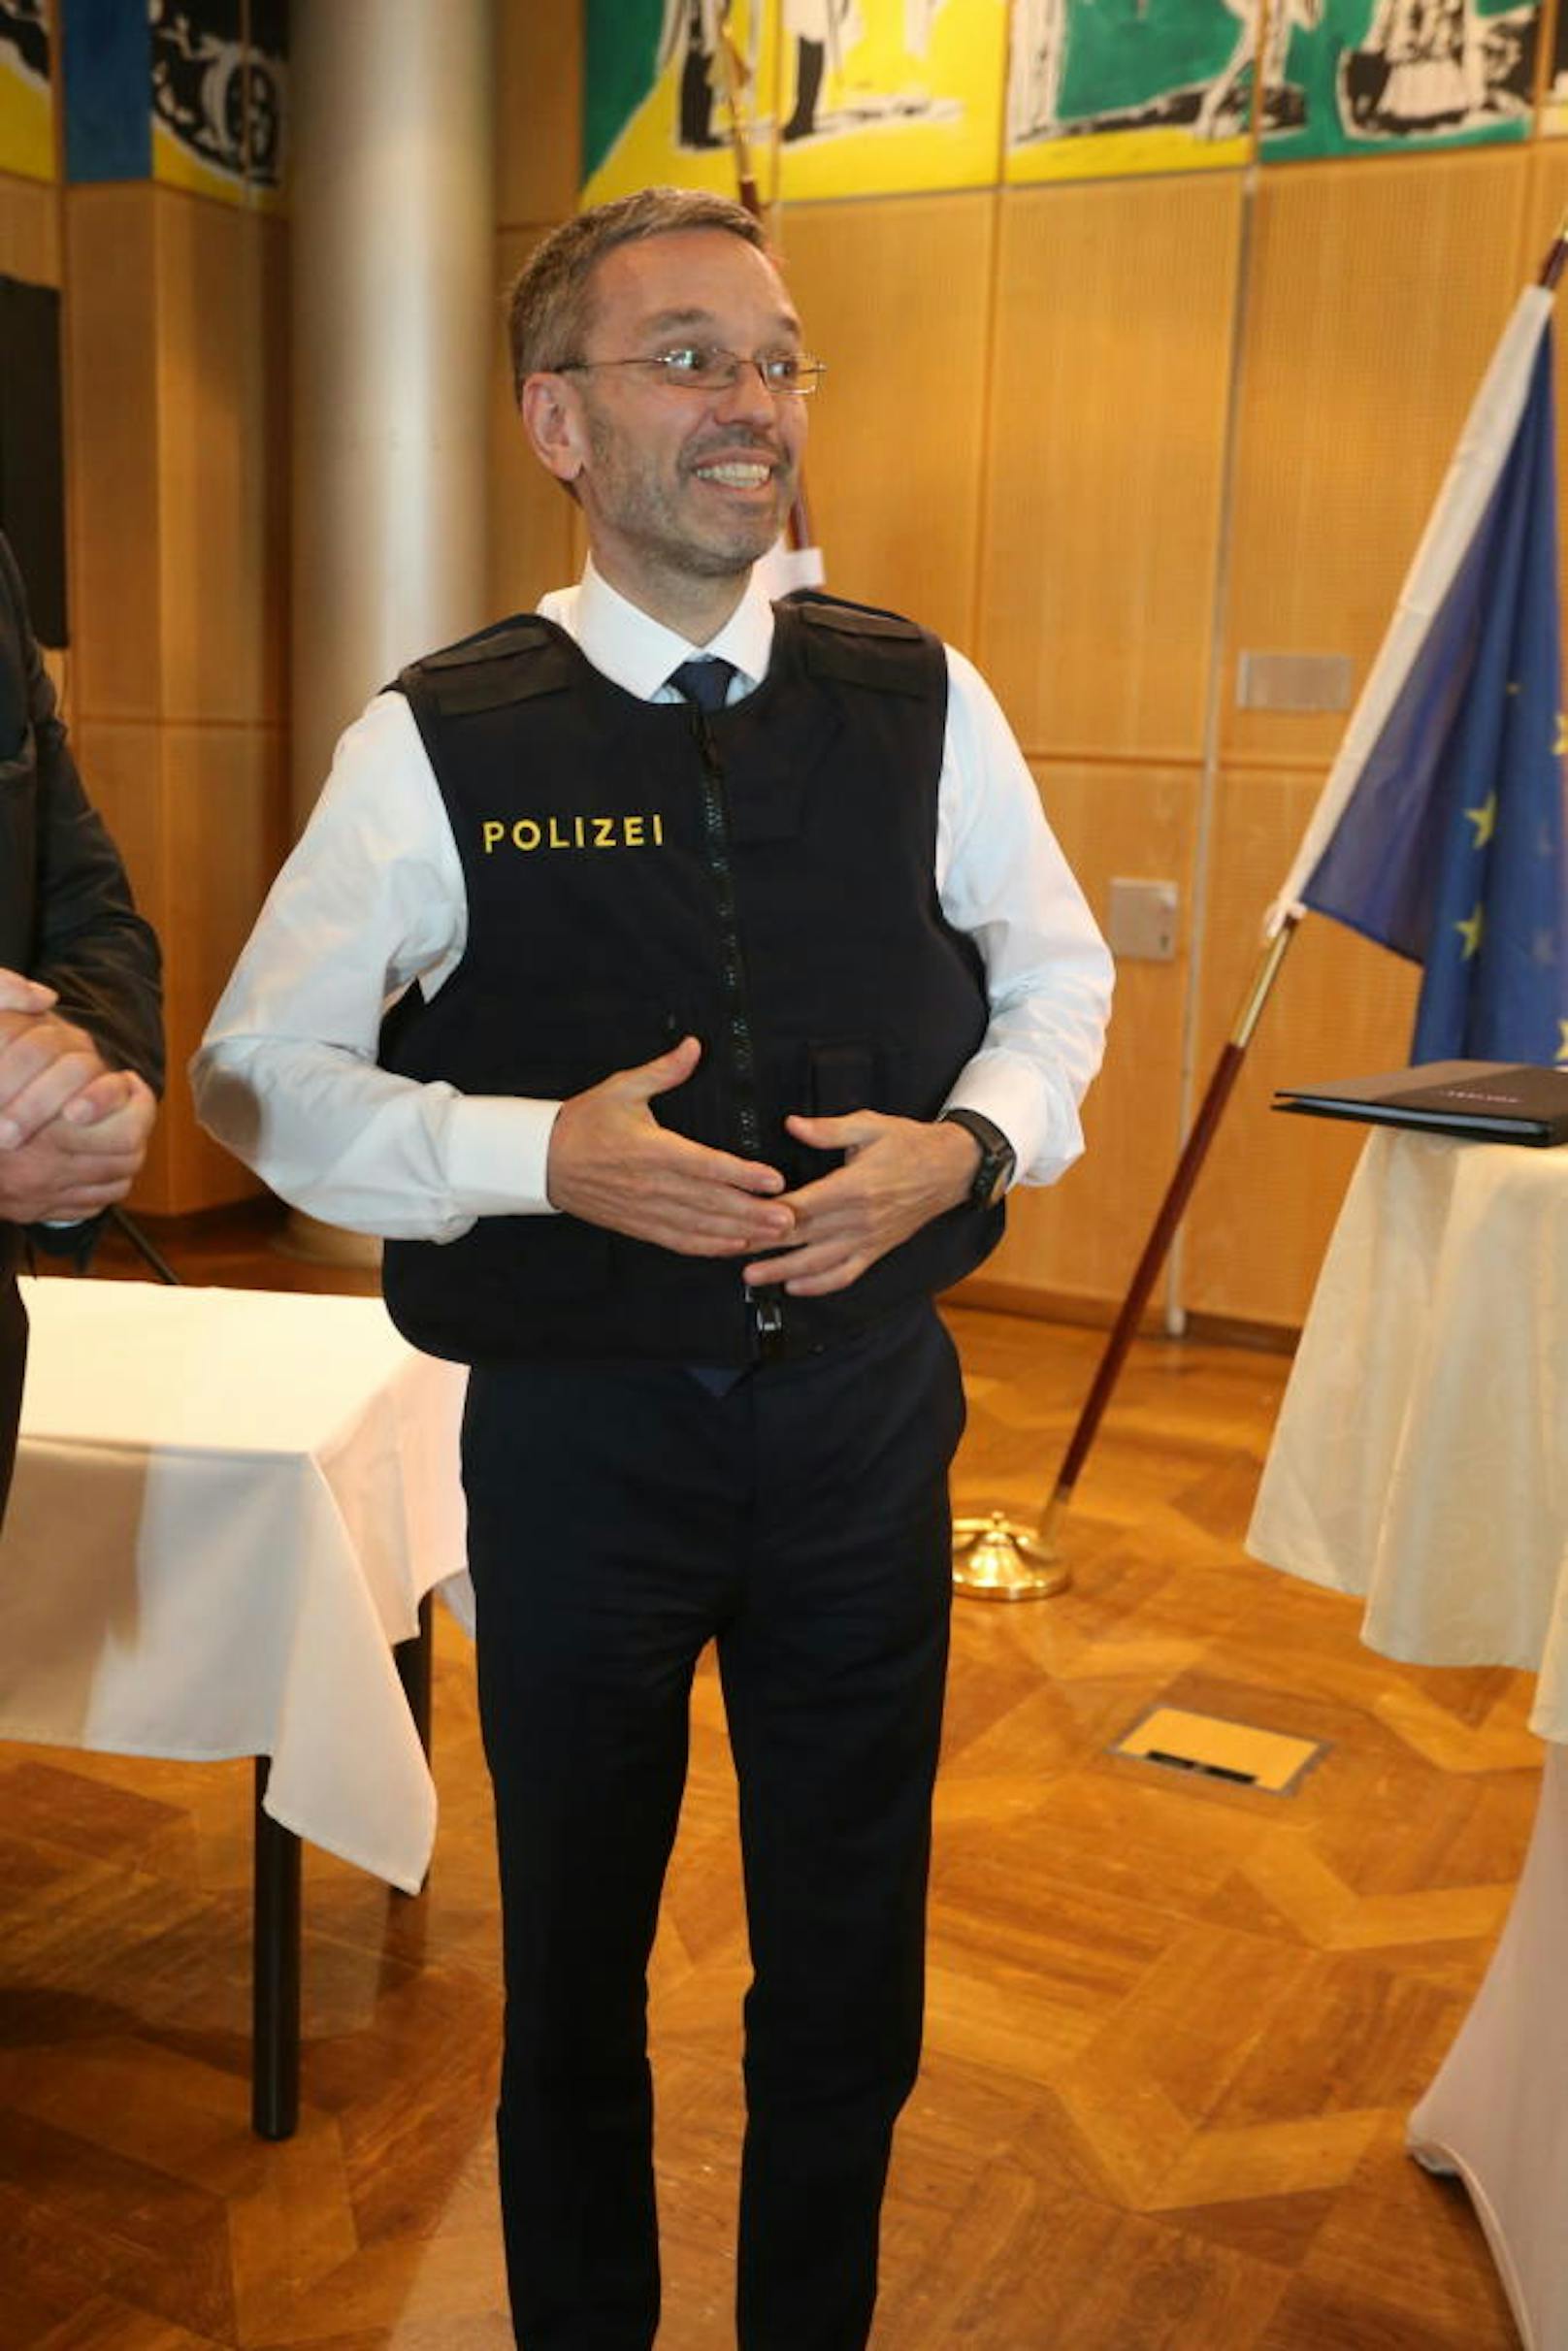 Innenminister Herbert Kickl (FPÖ) glücklich mit der neuen Schutzweste.